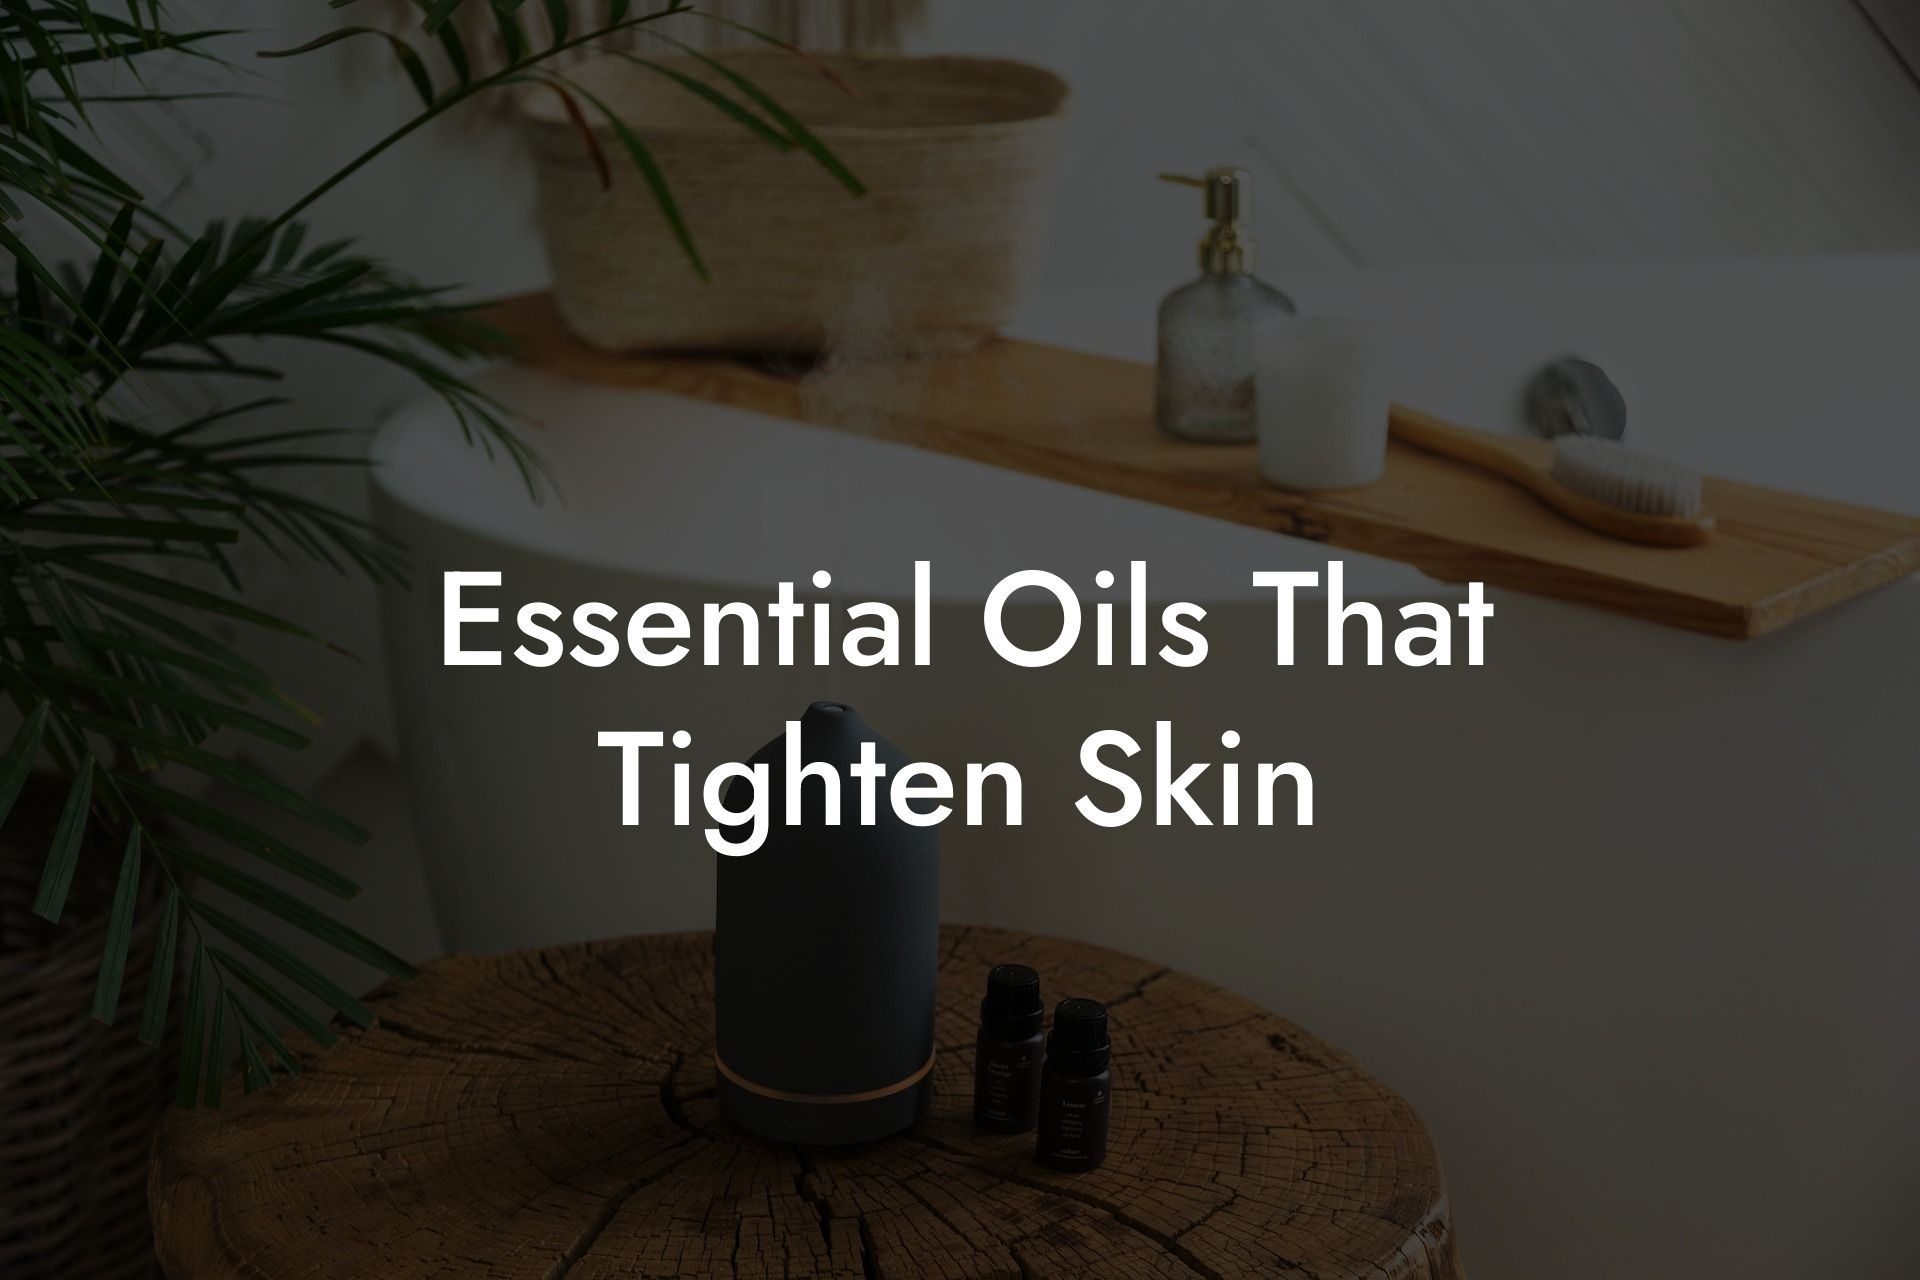 Essential Oils That Tighten Skin